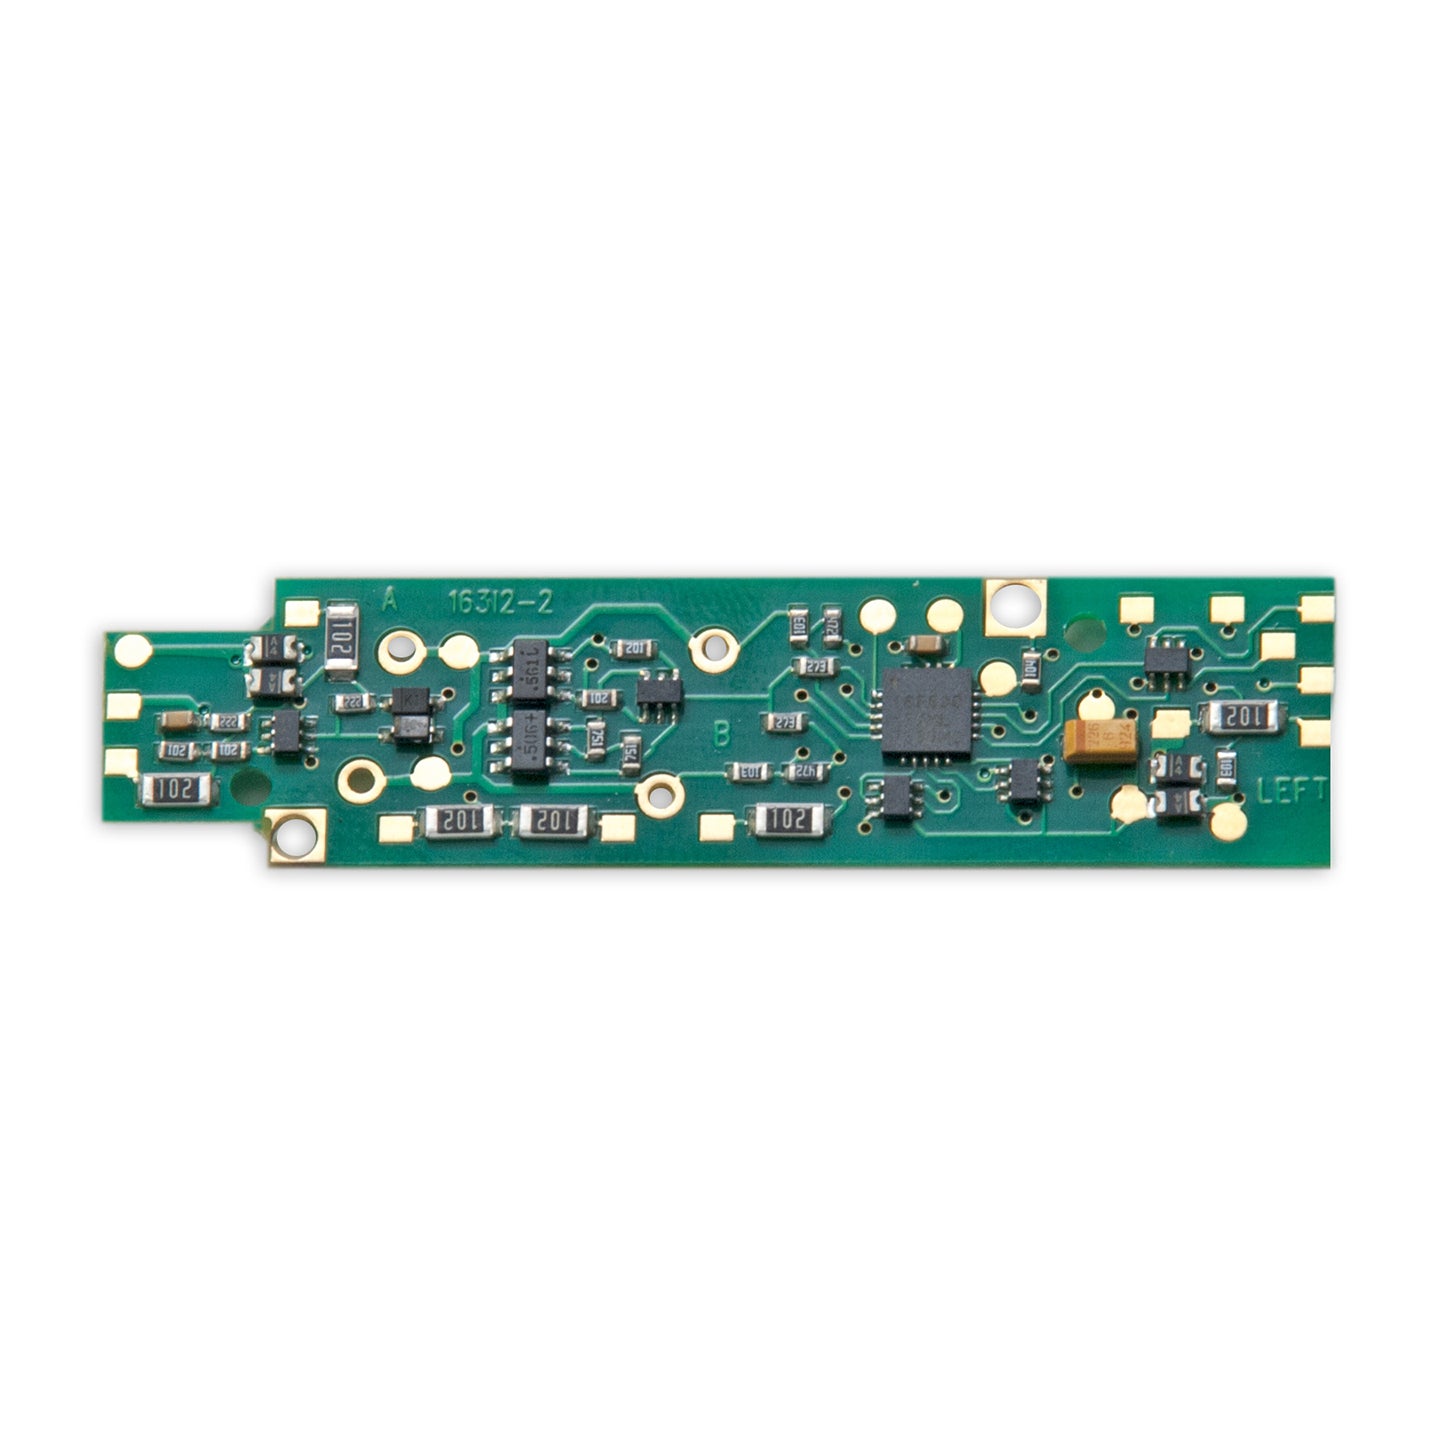 Digitrax 5091 N DN166I2B 1.5 Amp Decoder fits Intermountain FP7A